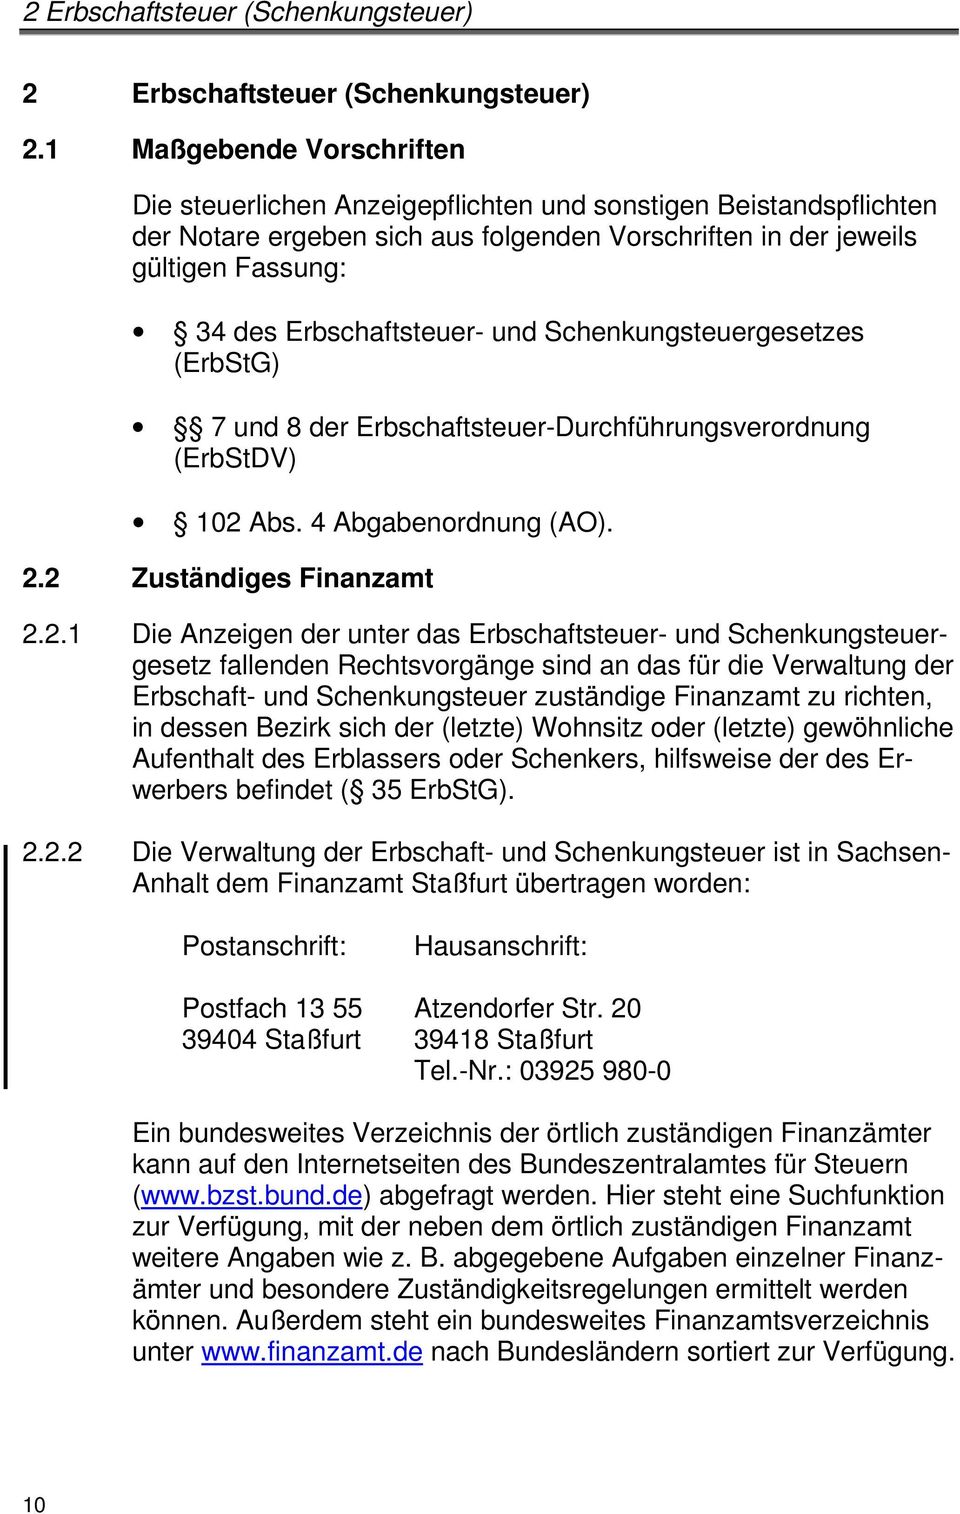 Merkblatt Grunderwerbsteuer Erbschaftsteuer Schenkungsteuer Ertragsteuern Pdf Free Download